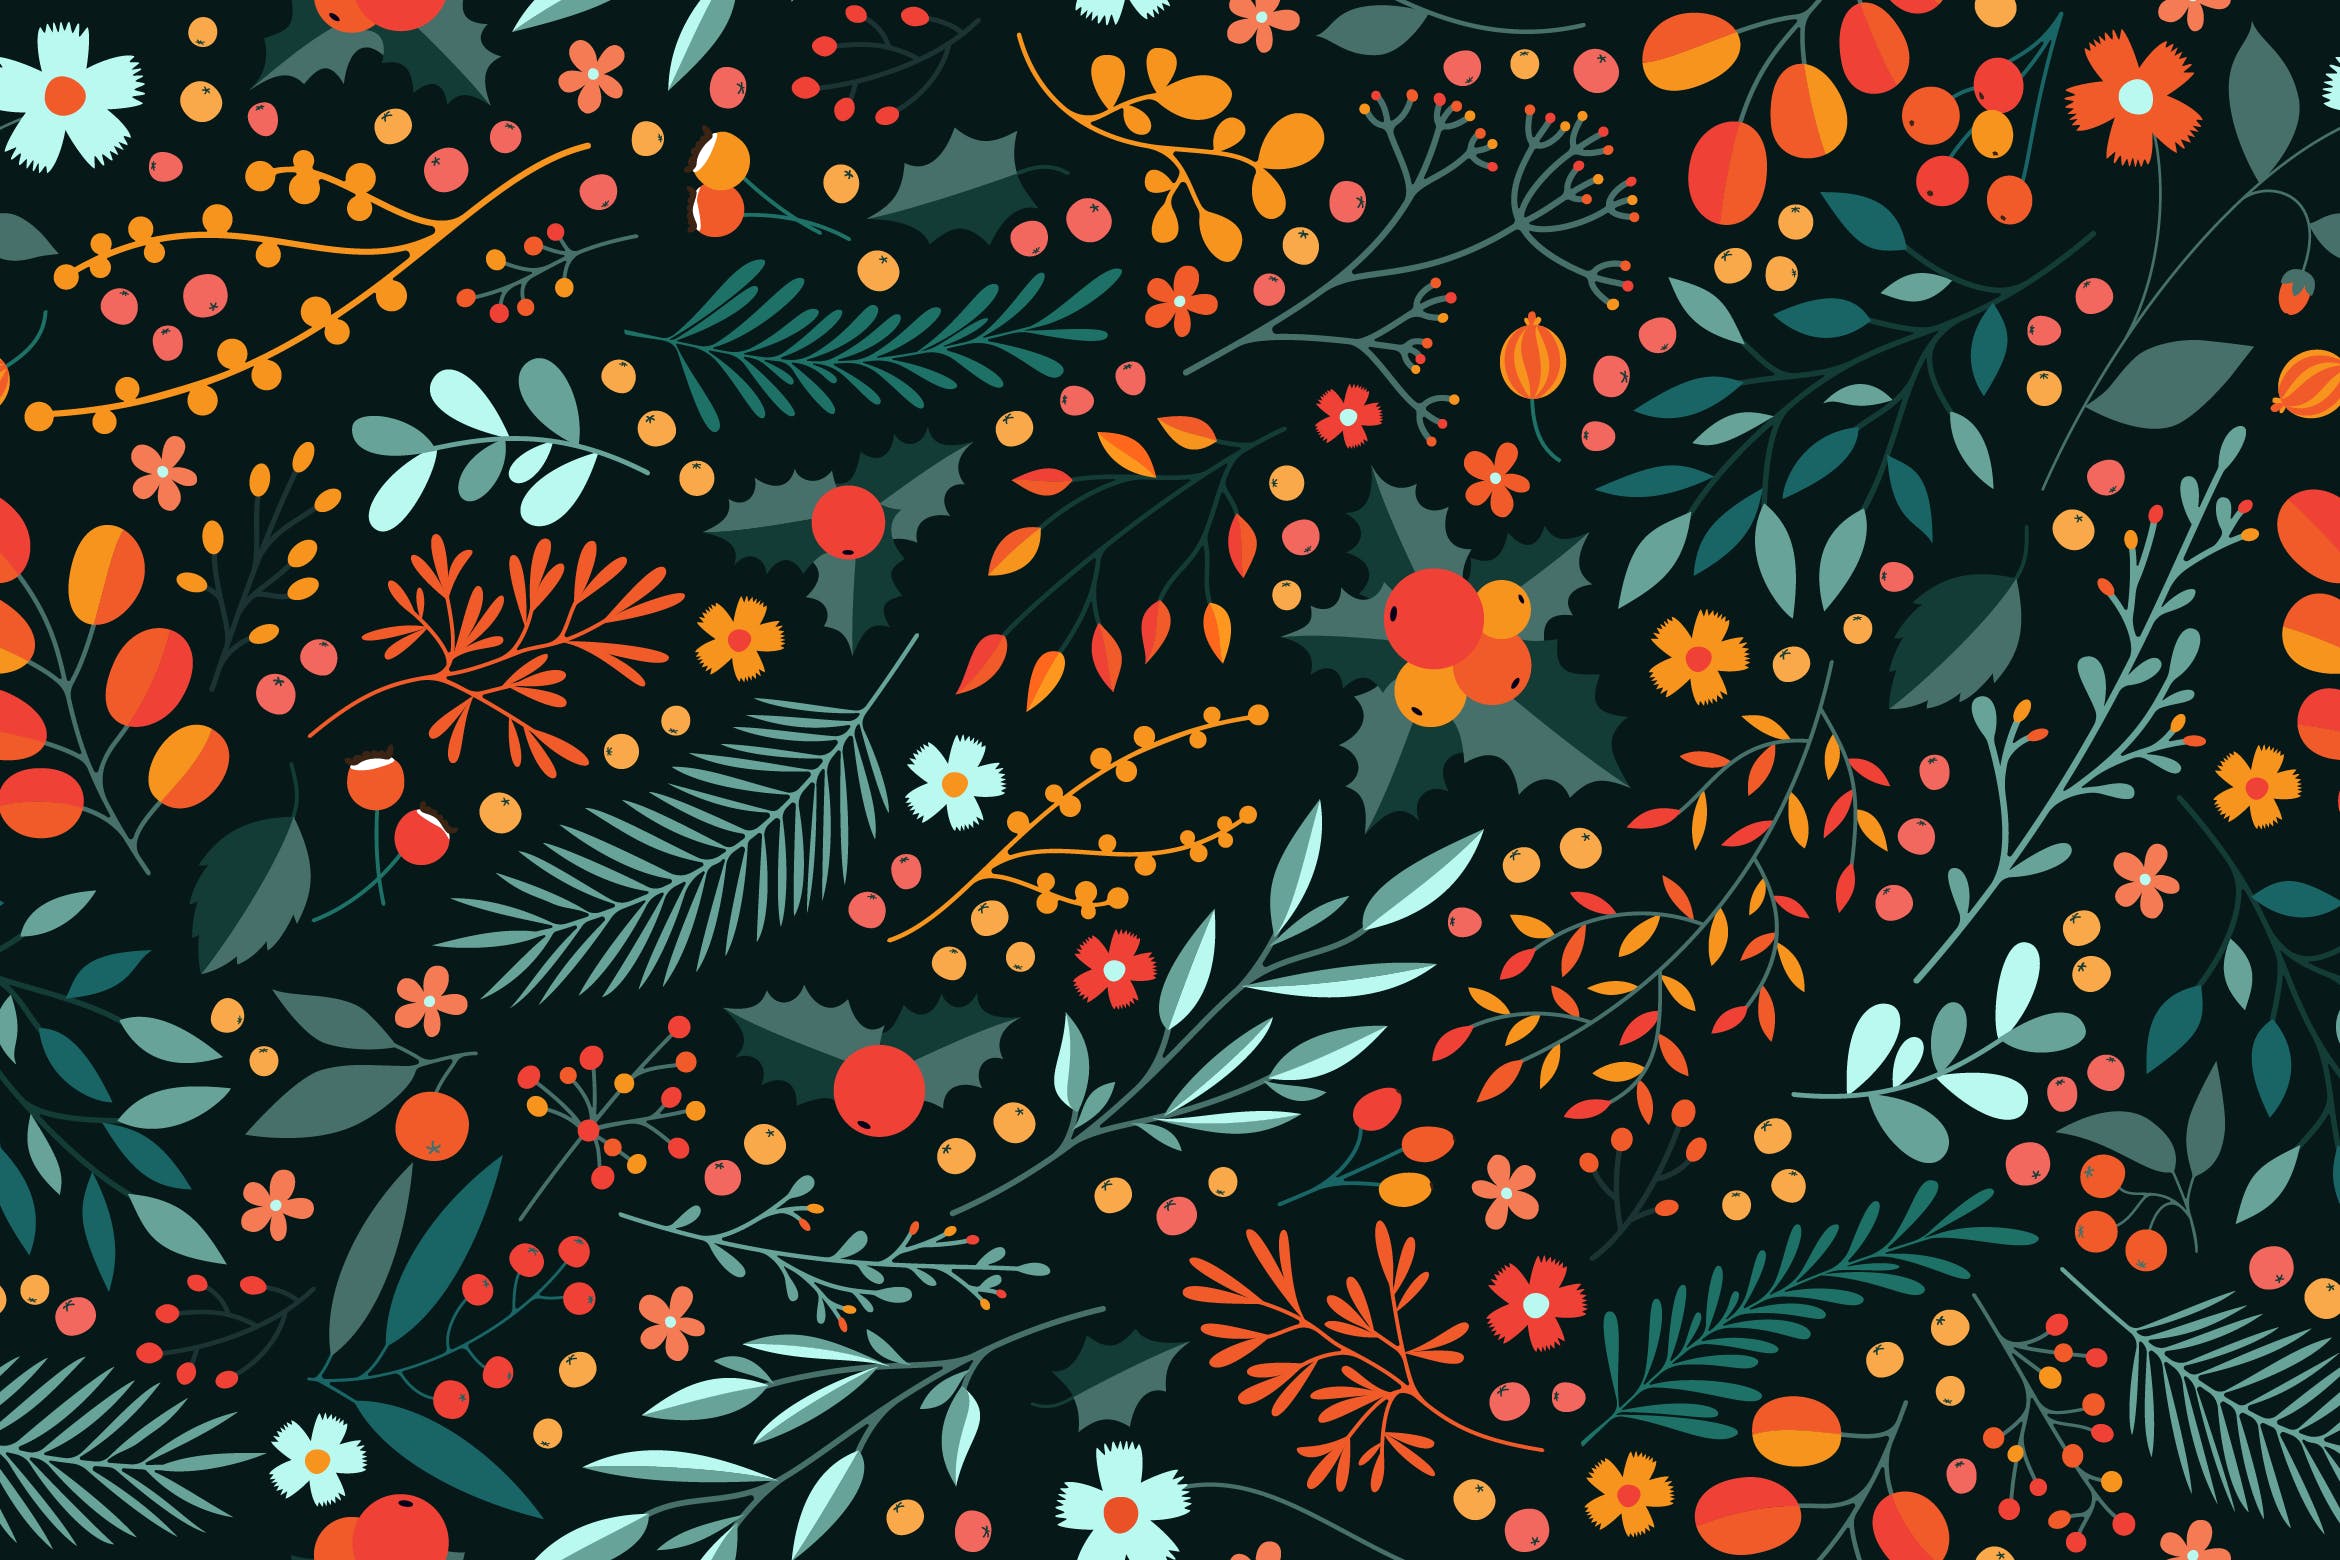 冬季花卉图案矢量素材 Winter Floral Pattern 图片素材 第1张